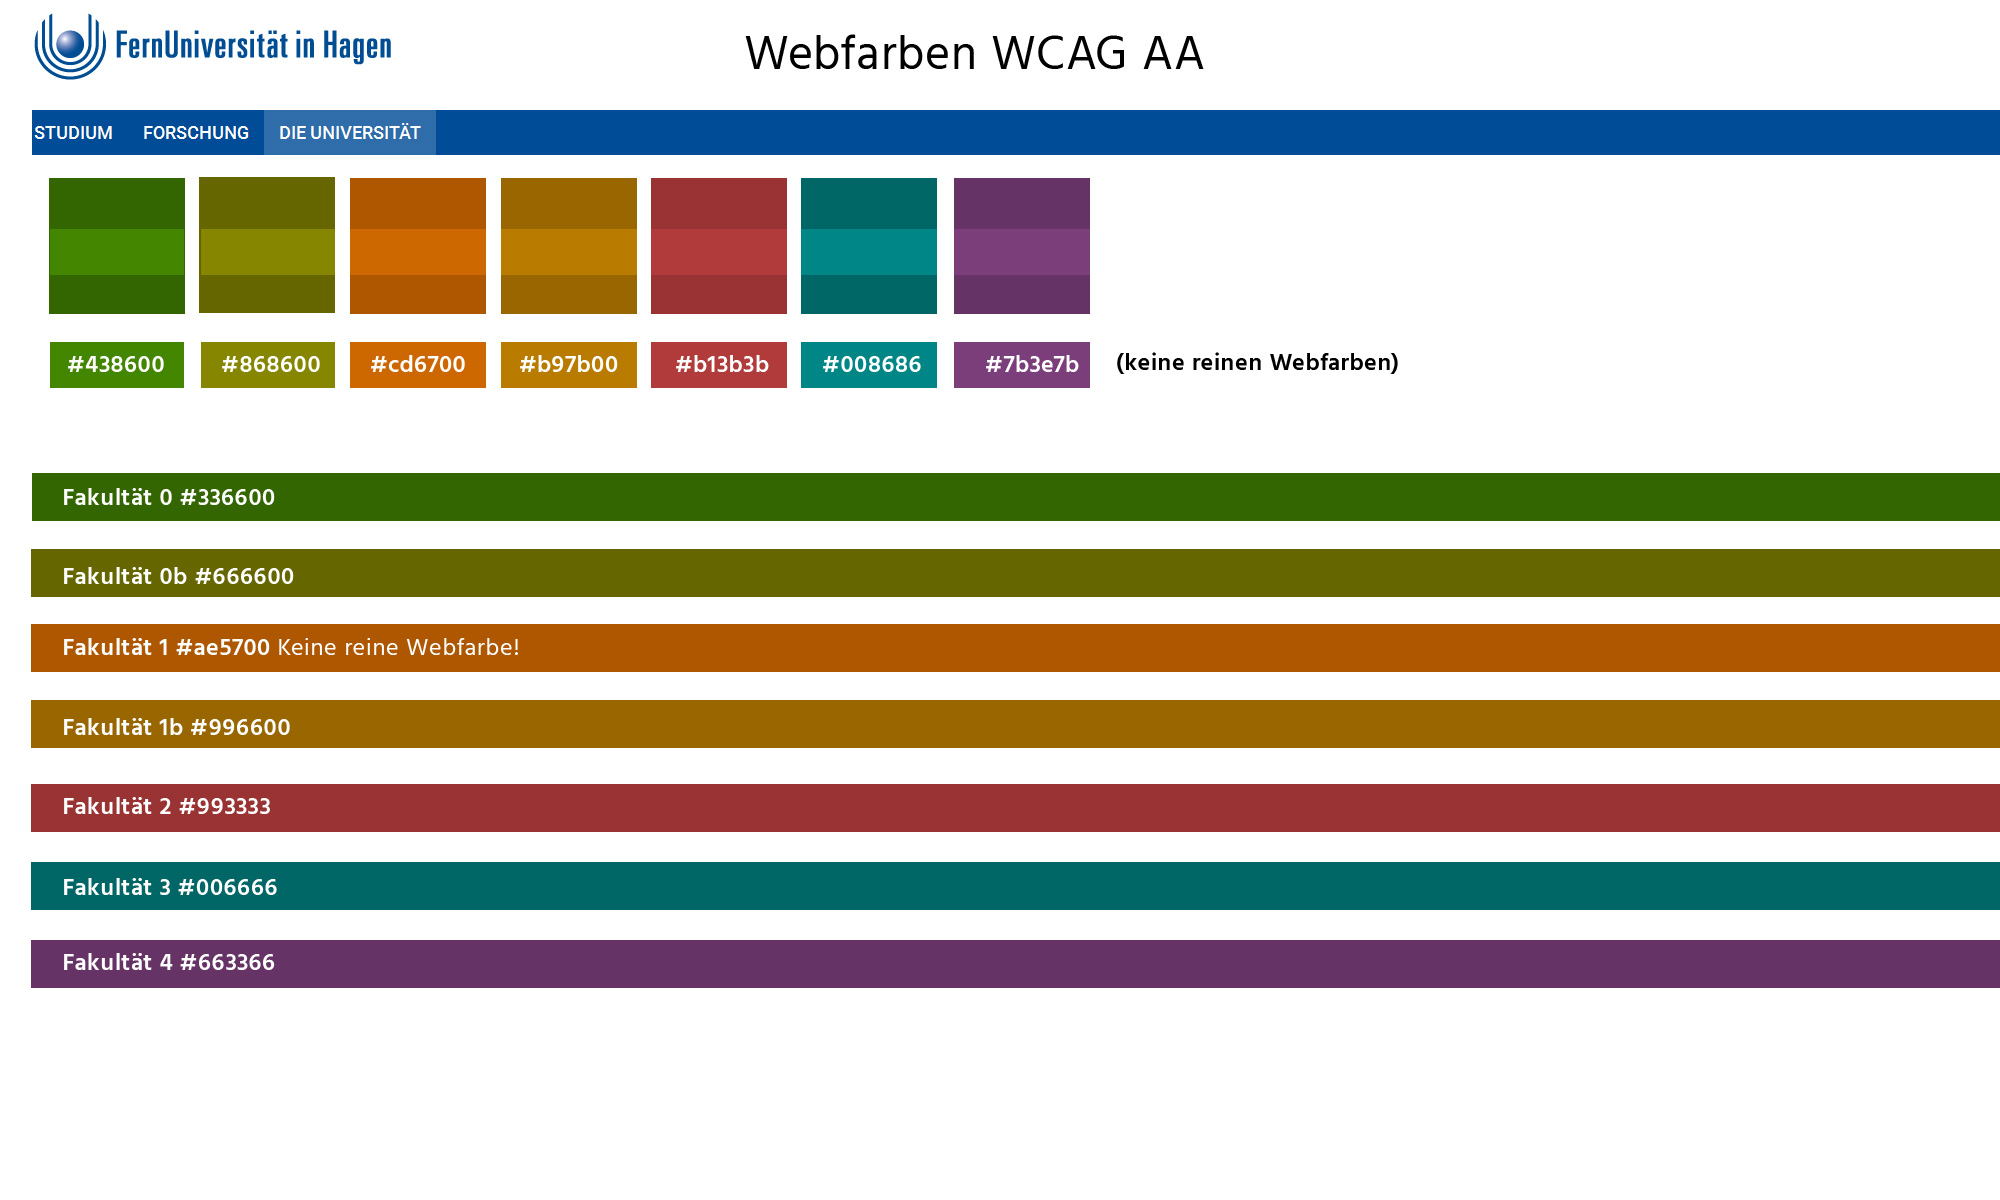 Farbpalette nach WCAG AA